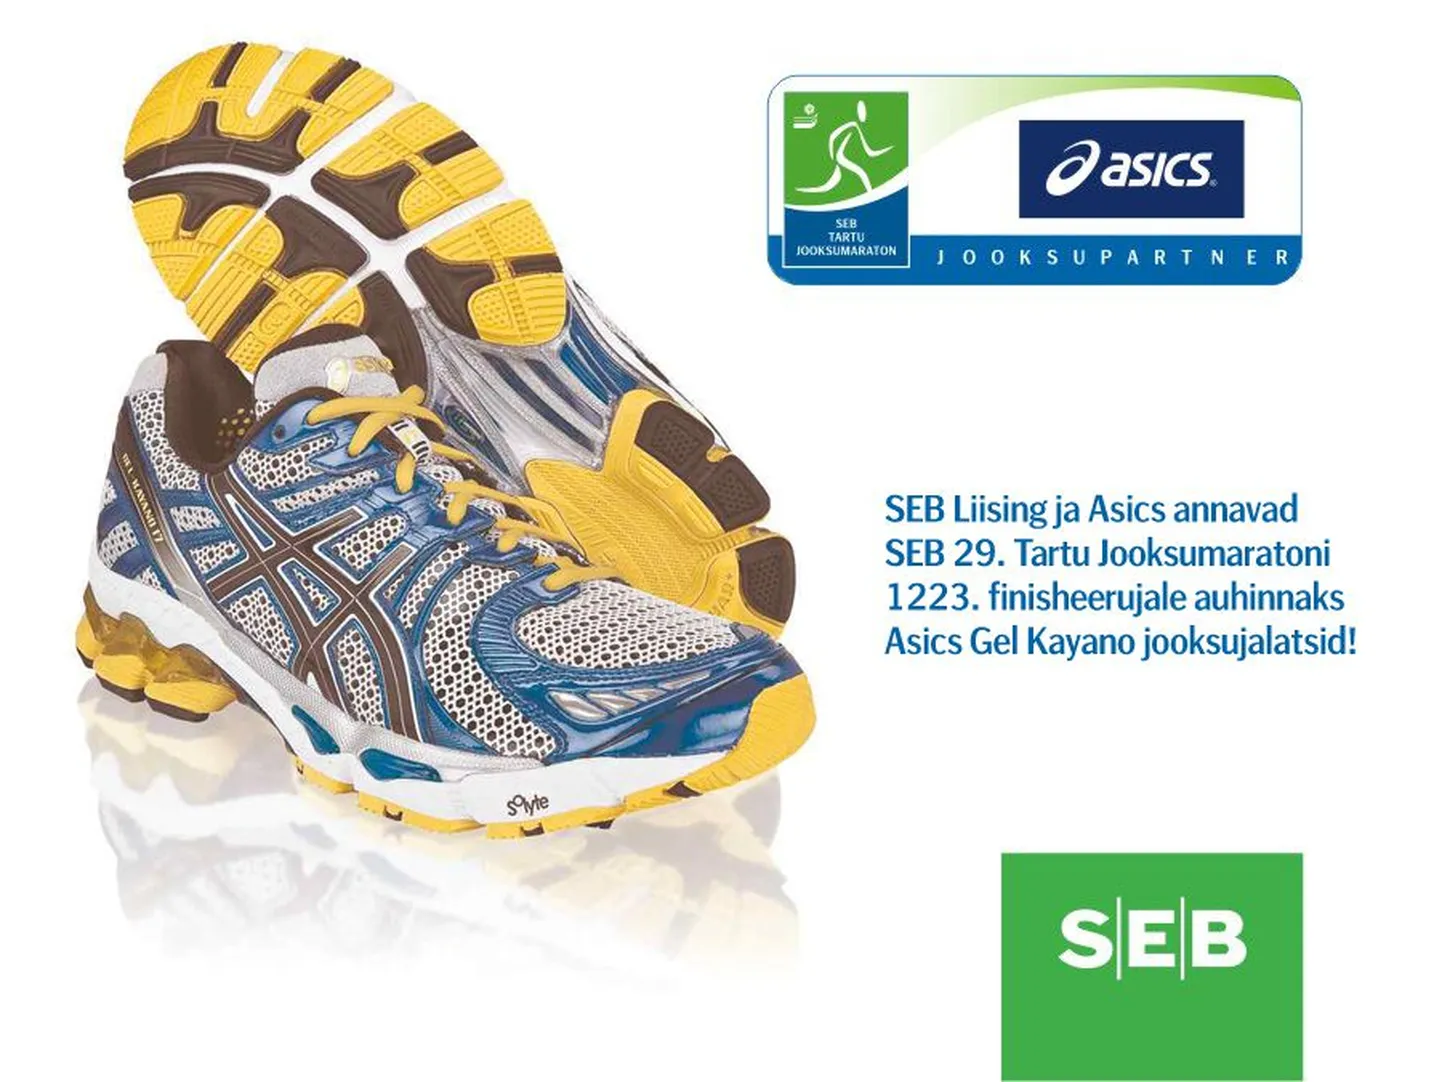 Asics Gel Kayano jooksujalatsid saab inimene, kes finišeerib SEB 29. Tartu Jooksumaratoni 1223-ndana.